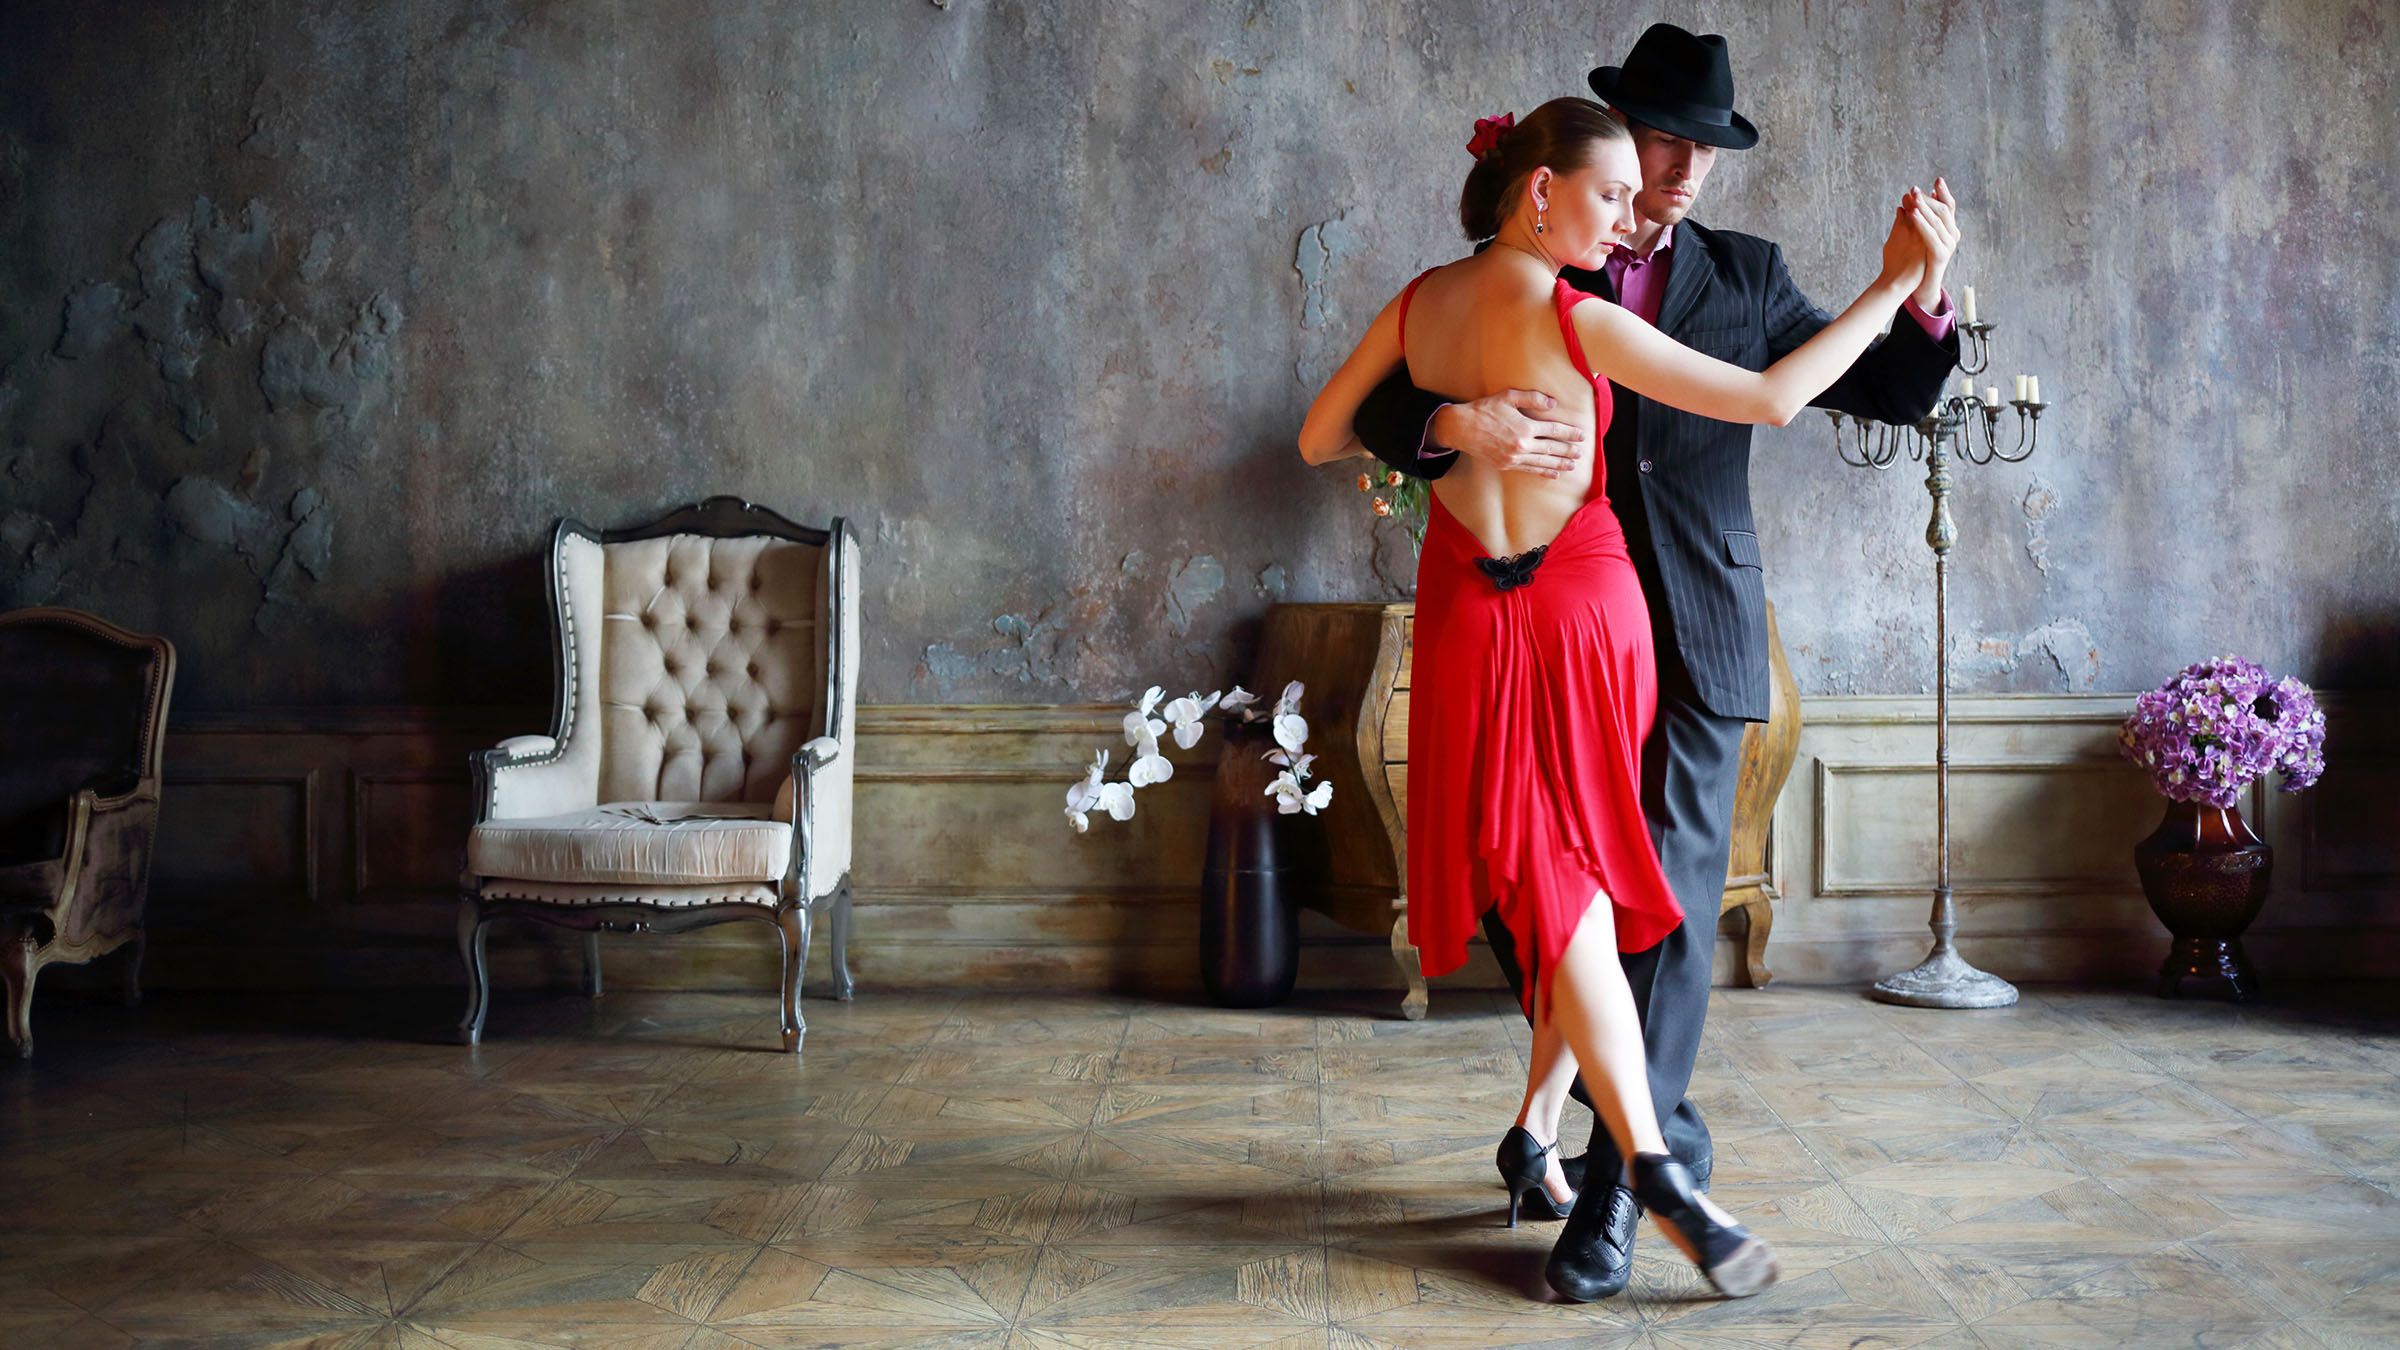 El tango: un baile que traspasa fronteras | Bailes y festividades ...